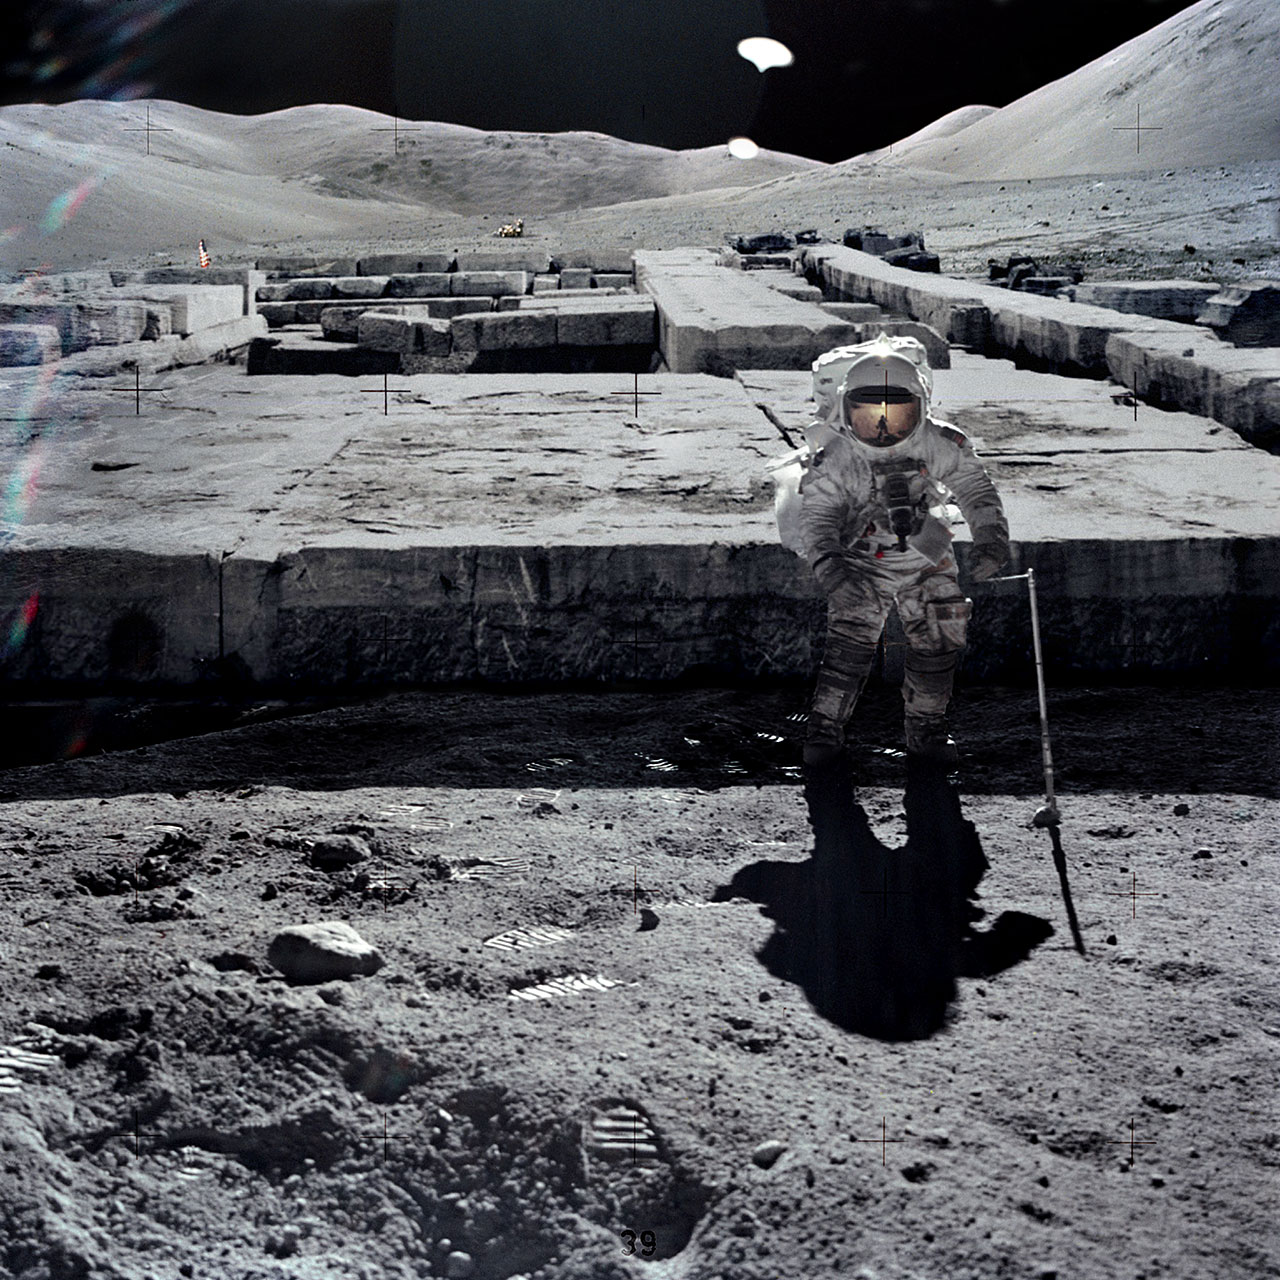 Φωτογραφίες από αρχαίο πολιτισμό στην Σελήνη δημοσίευσε πρώην στέλεχος της NASA - Φωτογραφία 17